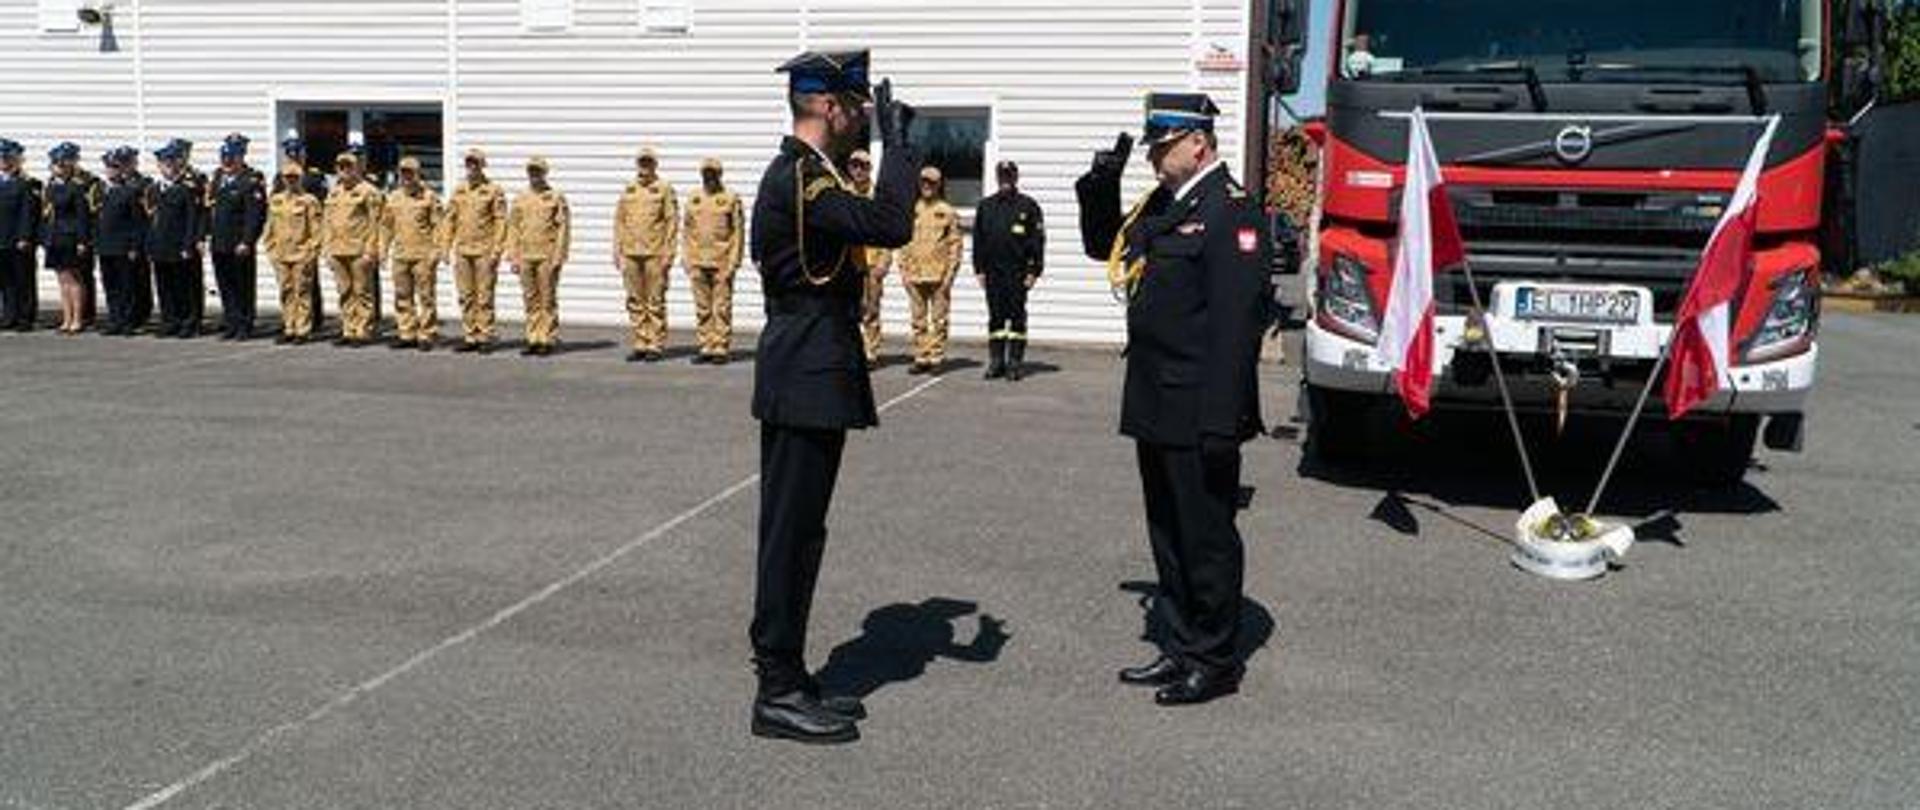 Na pierwszym planie dwóch strażaków salutujących do siebie z tyłu po prawej samochód gaśniczy z tyłu po lewej na tle budynku strażacy stojący na zbiórce